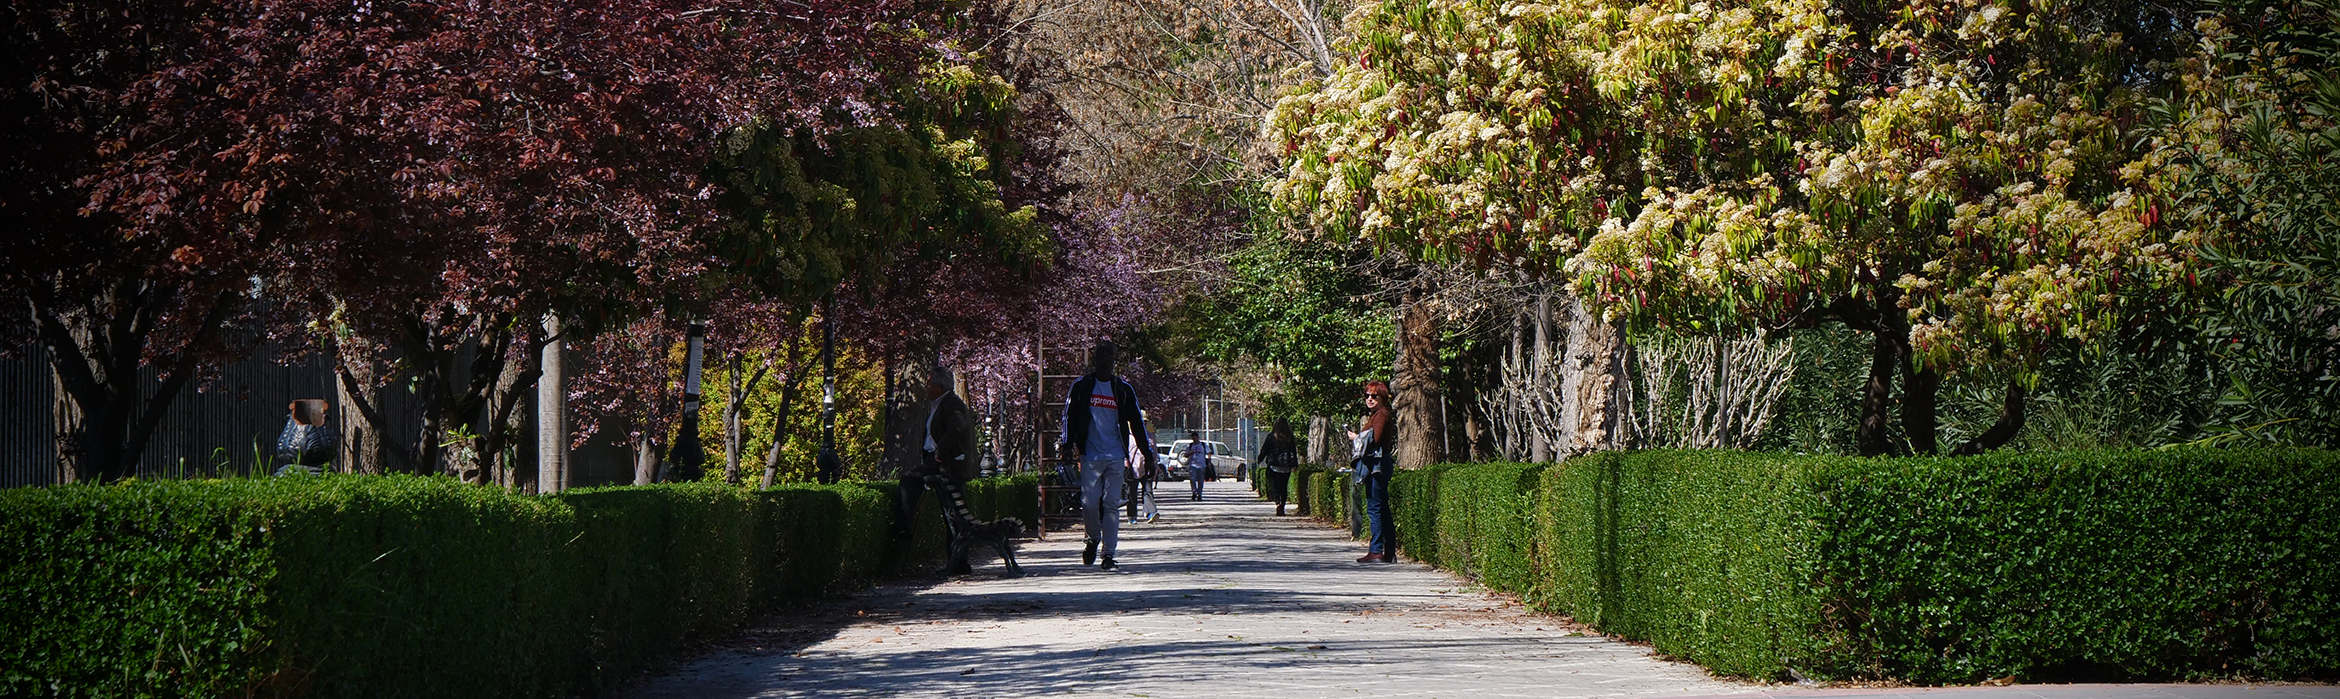 Imagen de un camino de los paseillos universitarios por donde pasea gente lejana entre setos y árboles